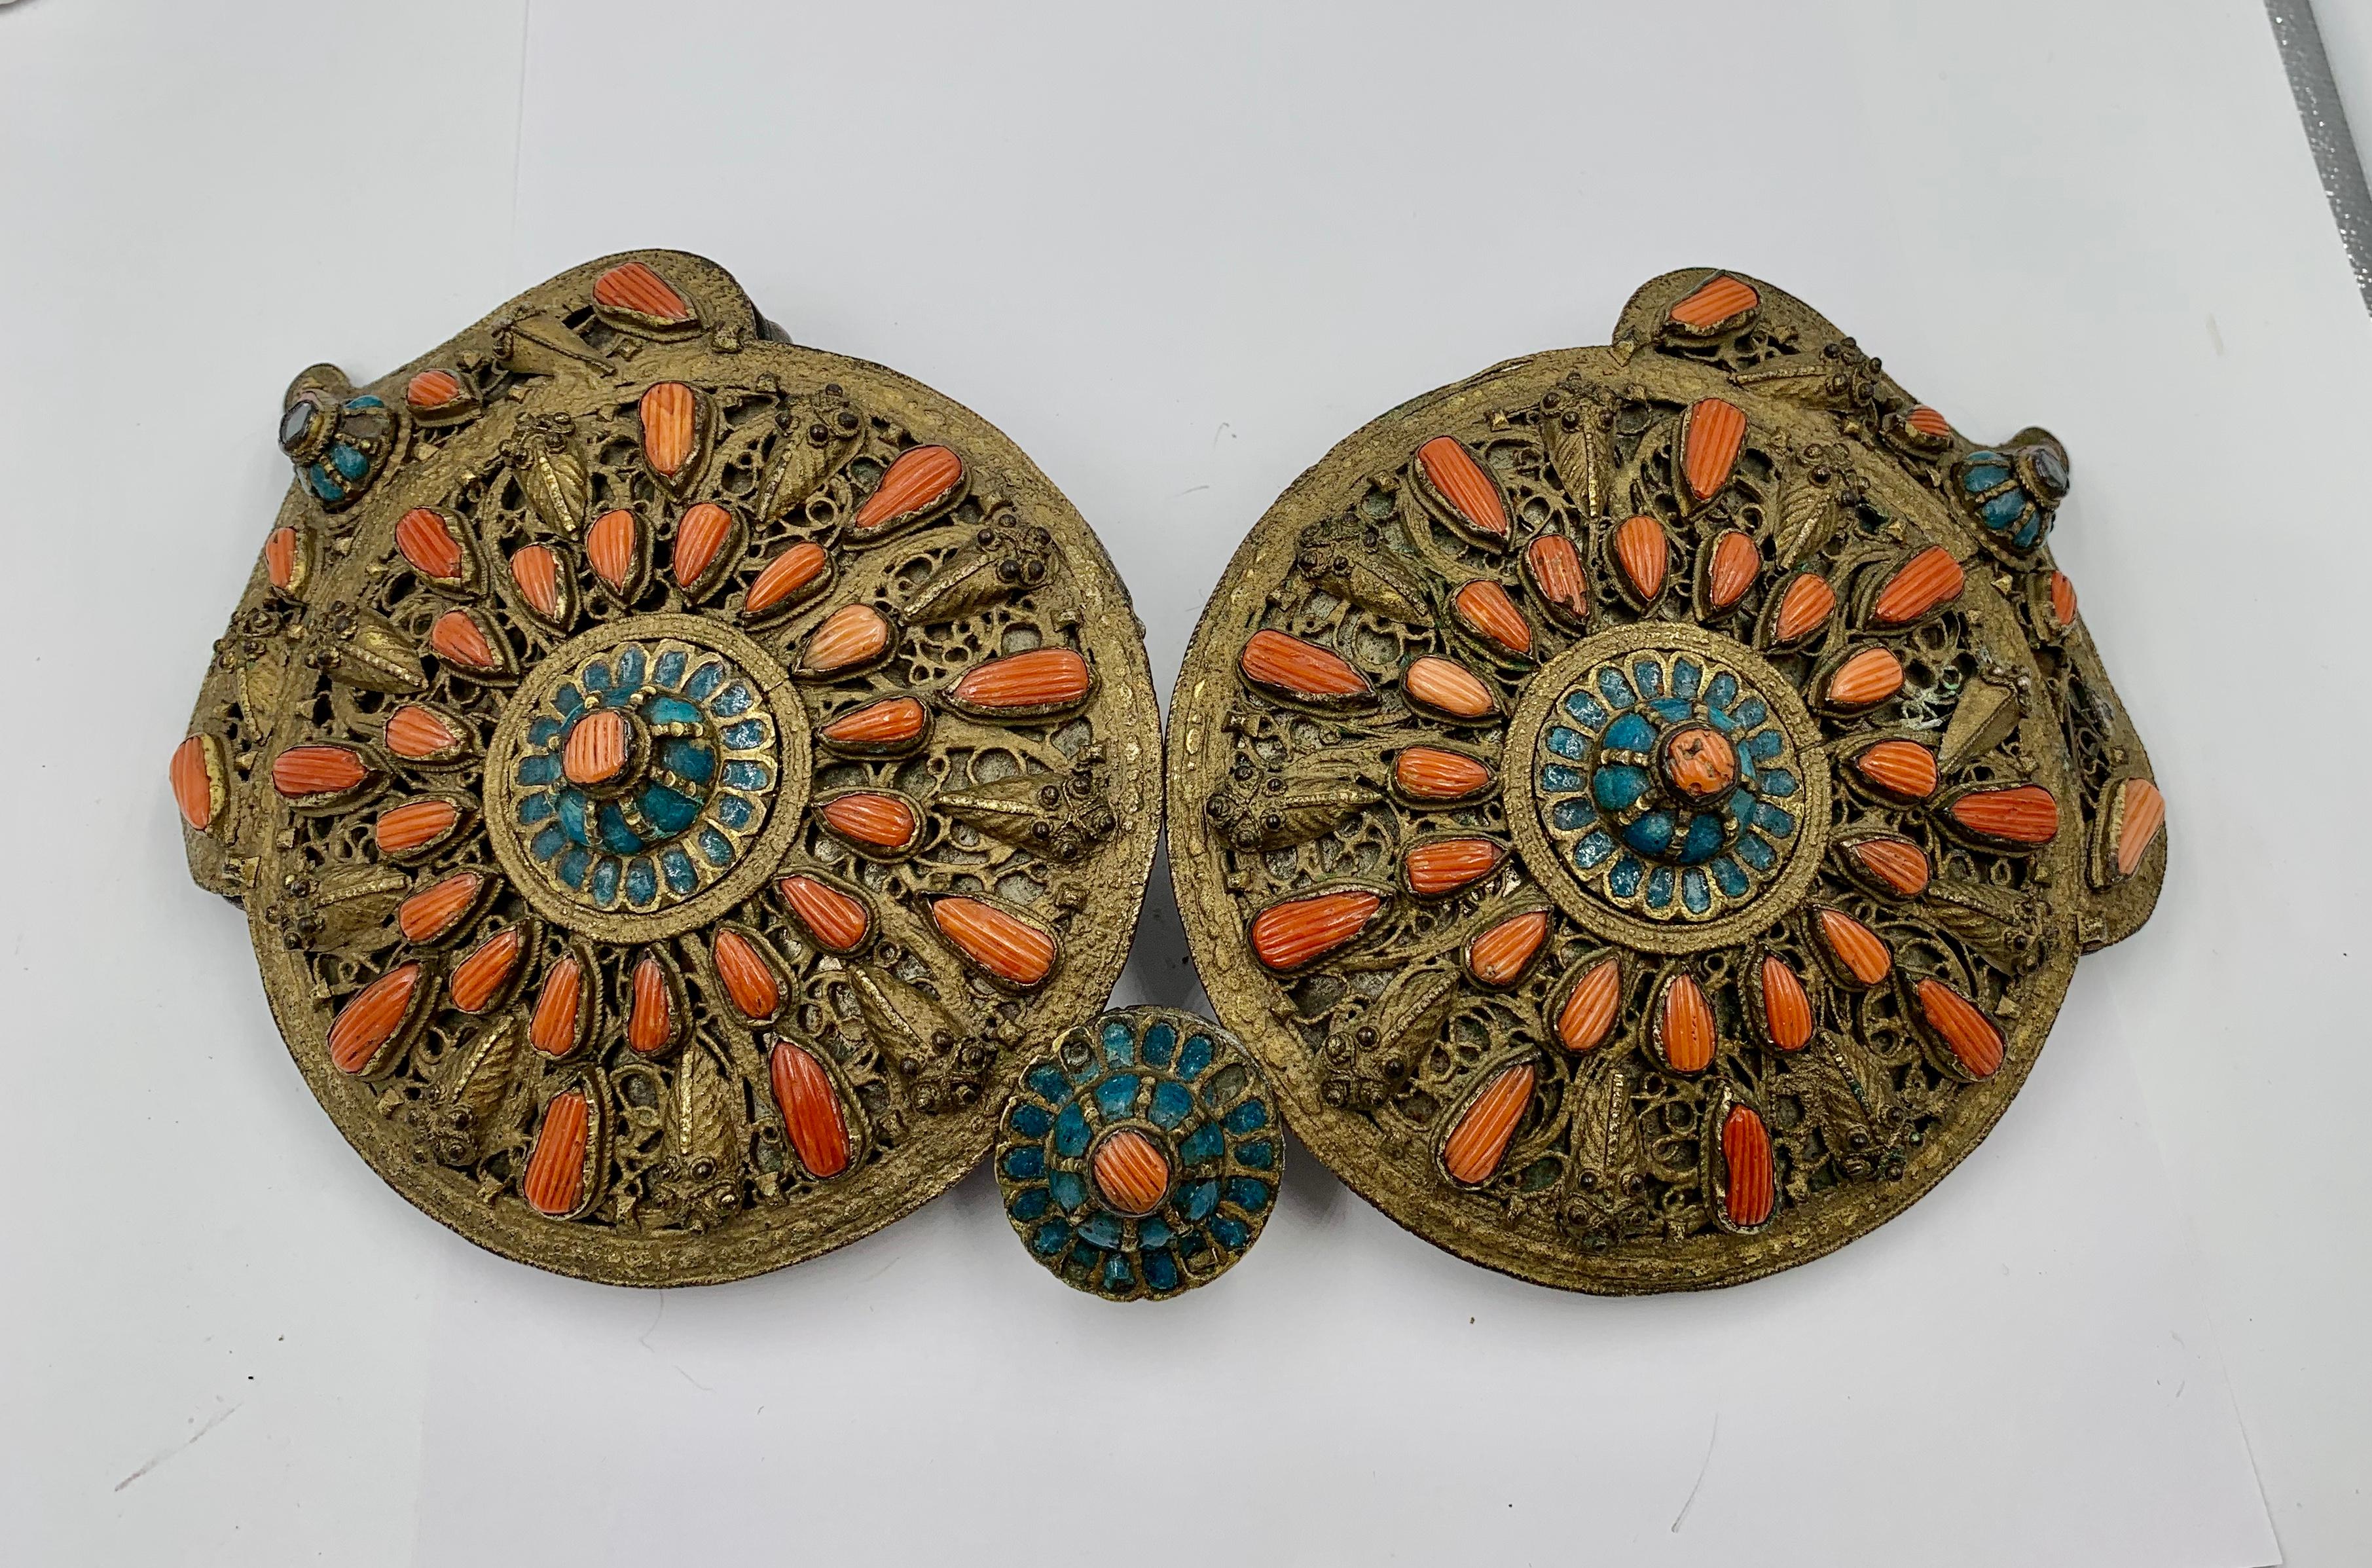 Boucle de ceinture en argent doré de qualité muséale, avec décor émaillé et corail en forme de larme, datant d'environ 1830, provenant de Saframpolis (Safranbolu) dans le Pontos de Grèce, dans l'actuelle Turquie.   Il existe une boucle similaire